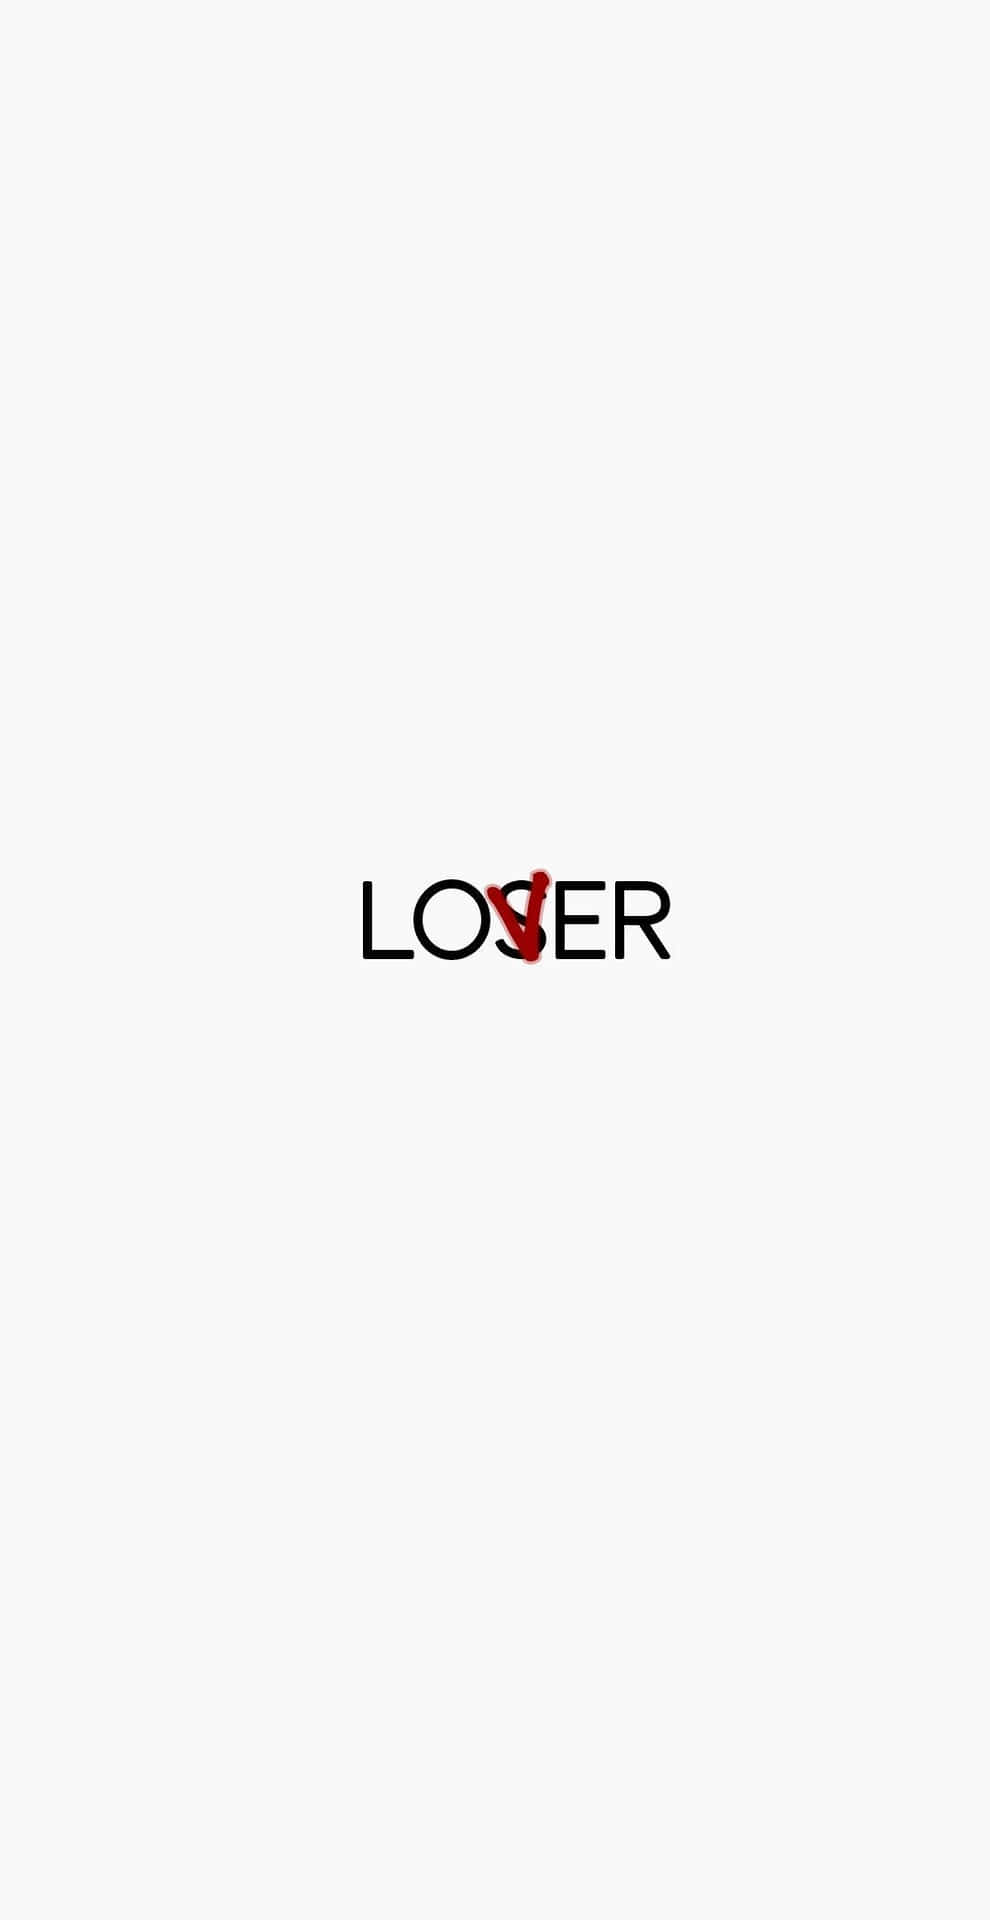 loser logo